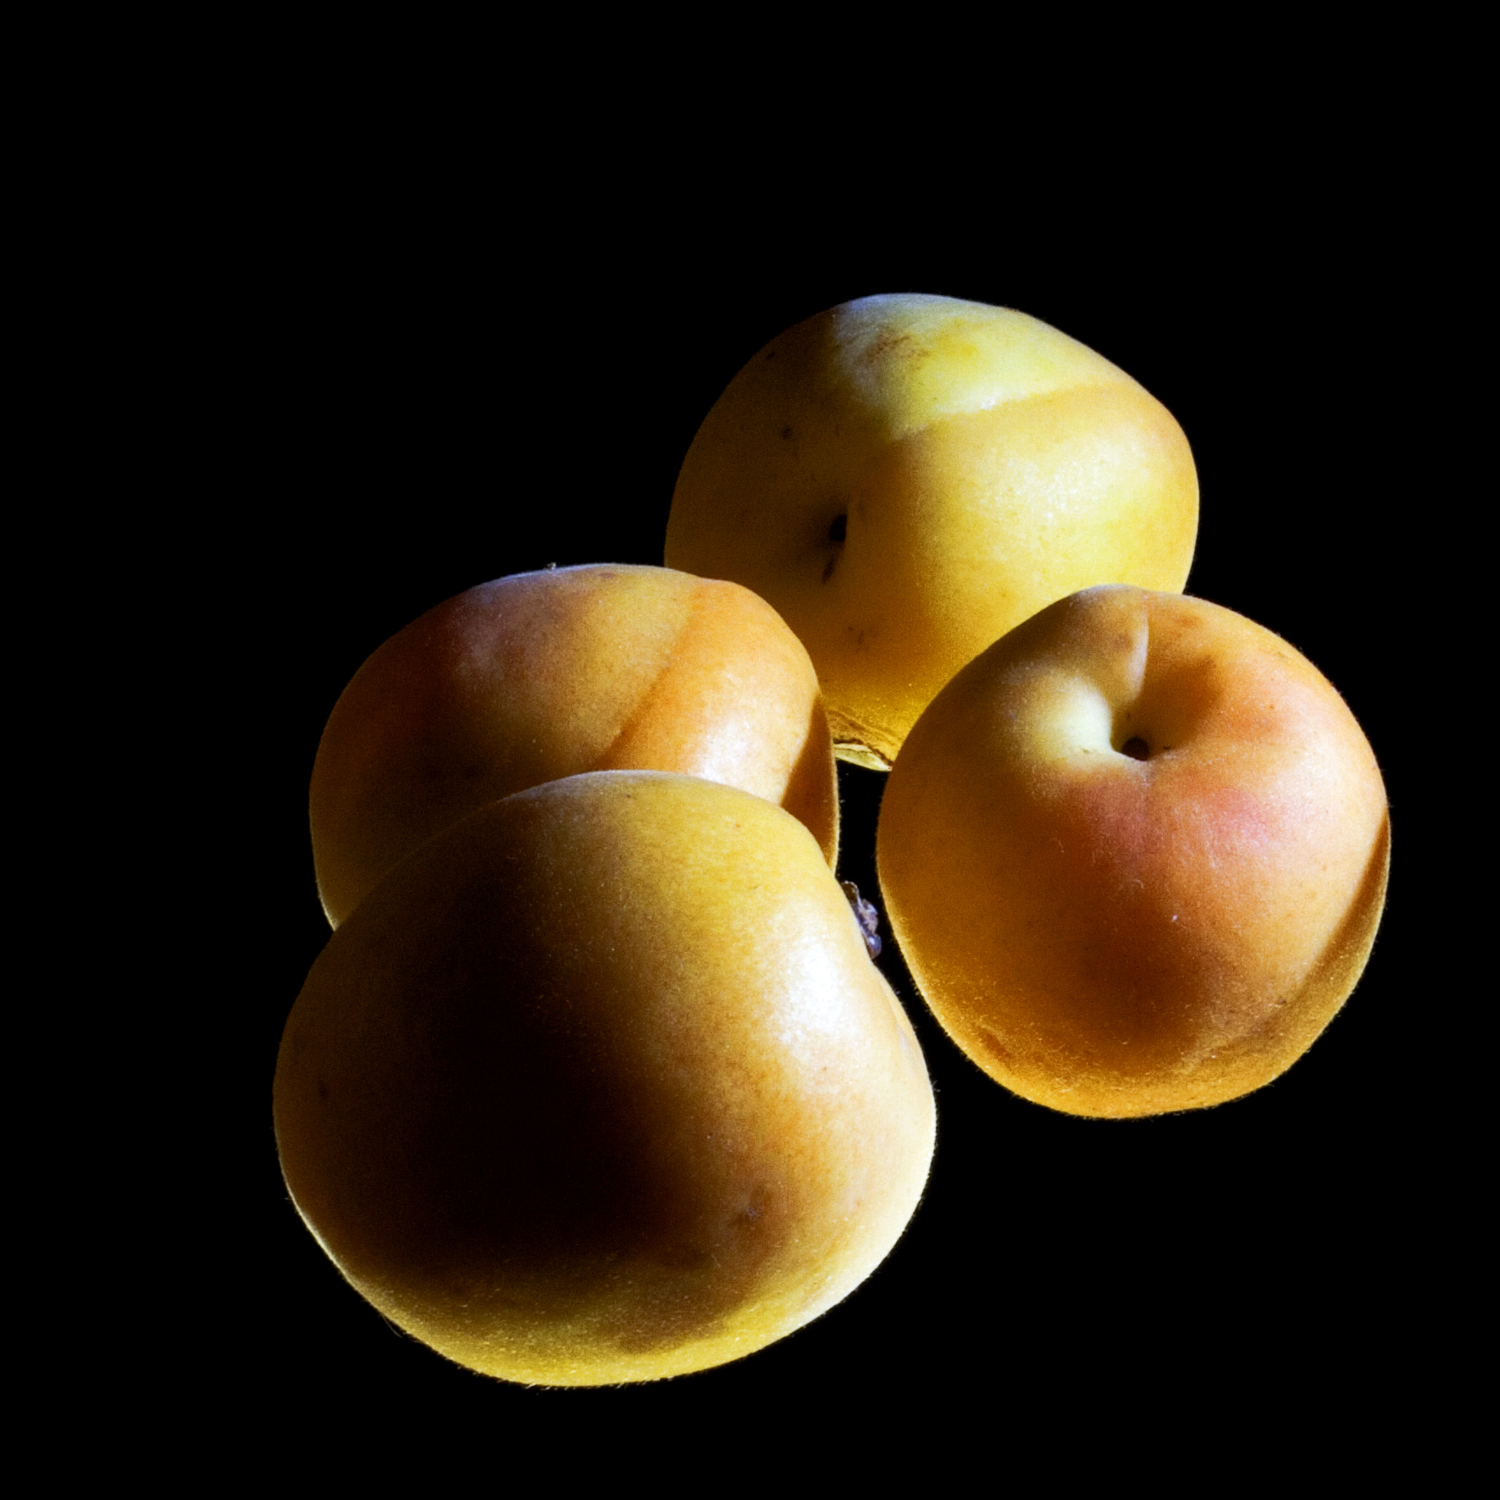 Apricots photo